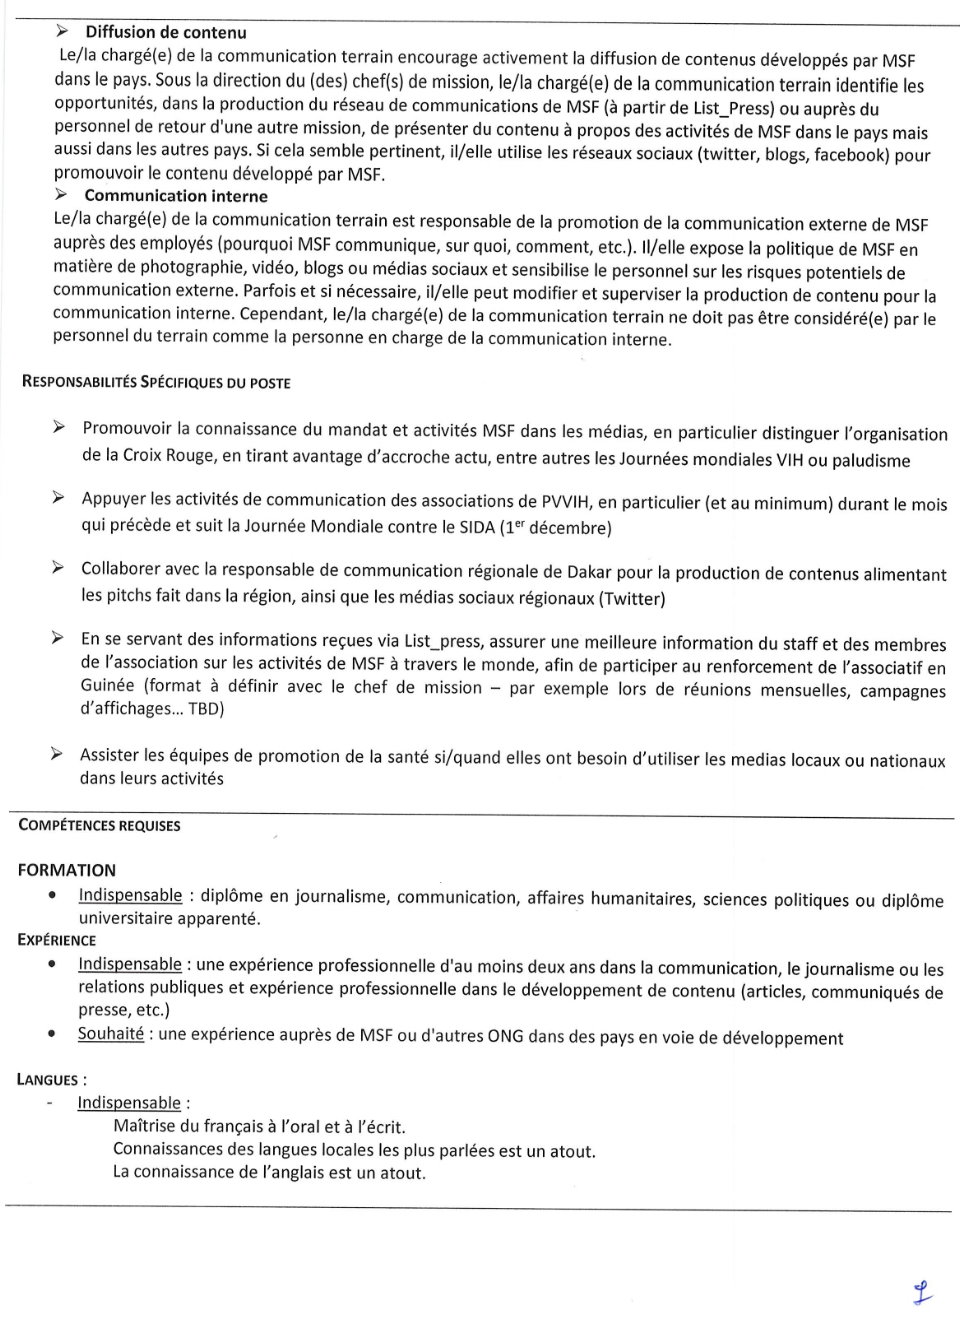 AVIS DE RECRUTEMENT D'UN CHARGÉ DE LA COMMUNICATION TERRAIN | Page 2